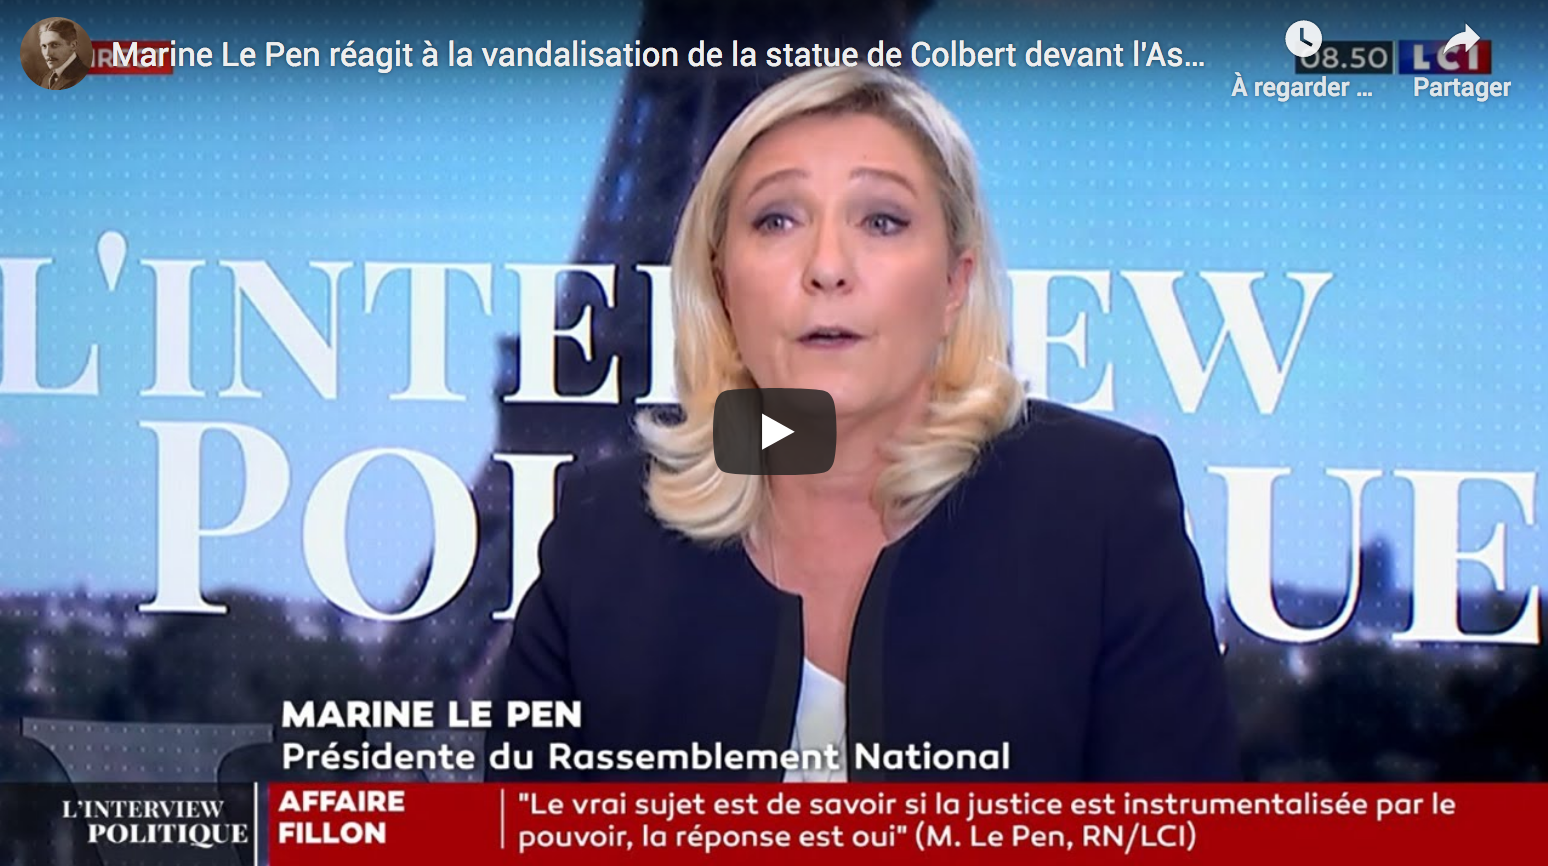 Marine Le Pen réagit à la vandalisation de la statue de Colbert devant l’Assemblée nationale (VIDÉO)